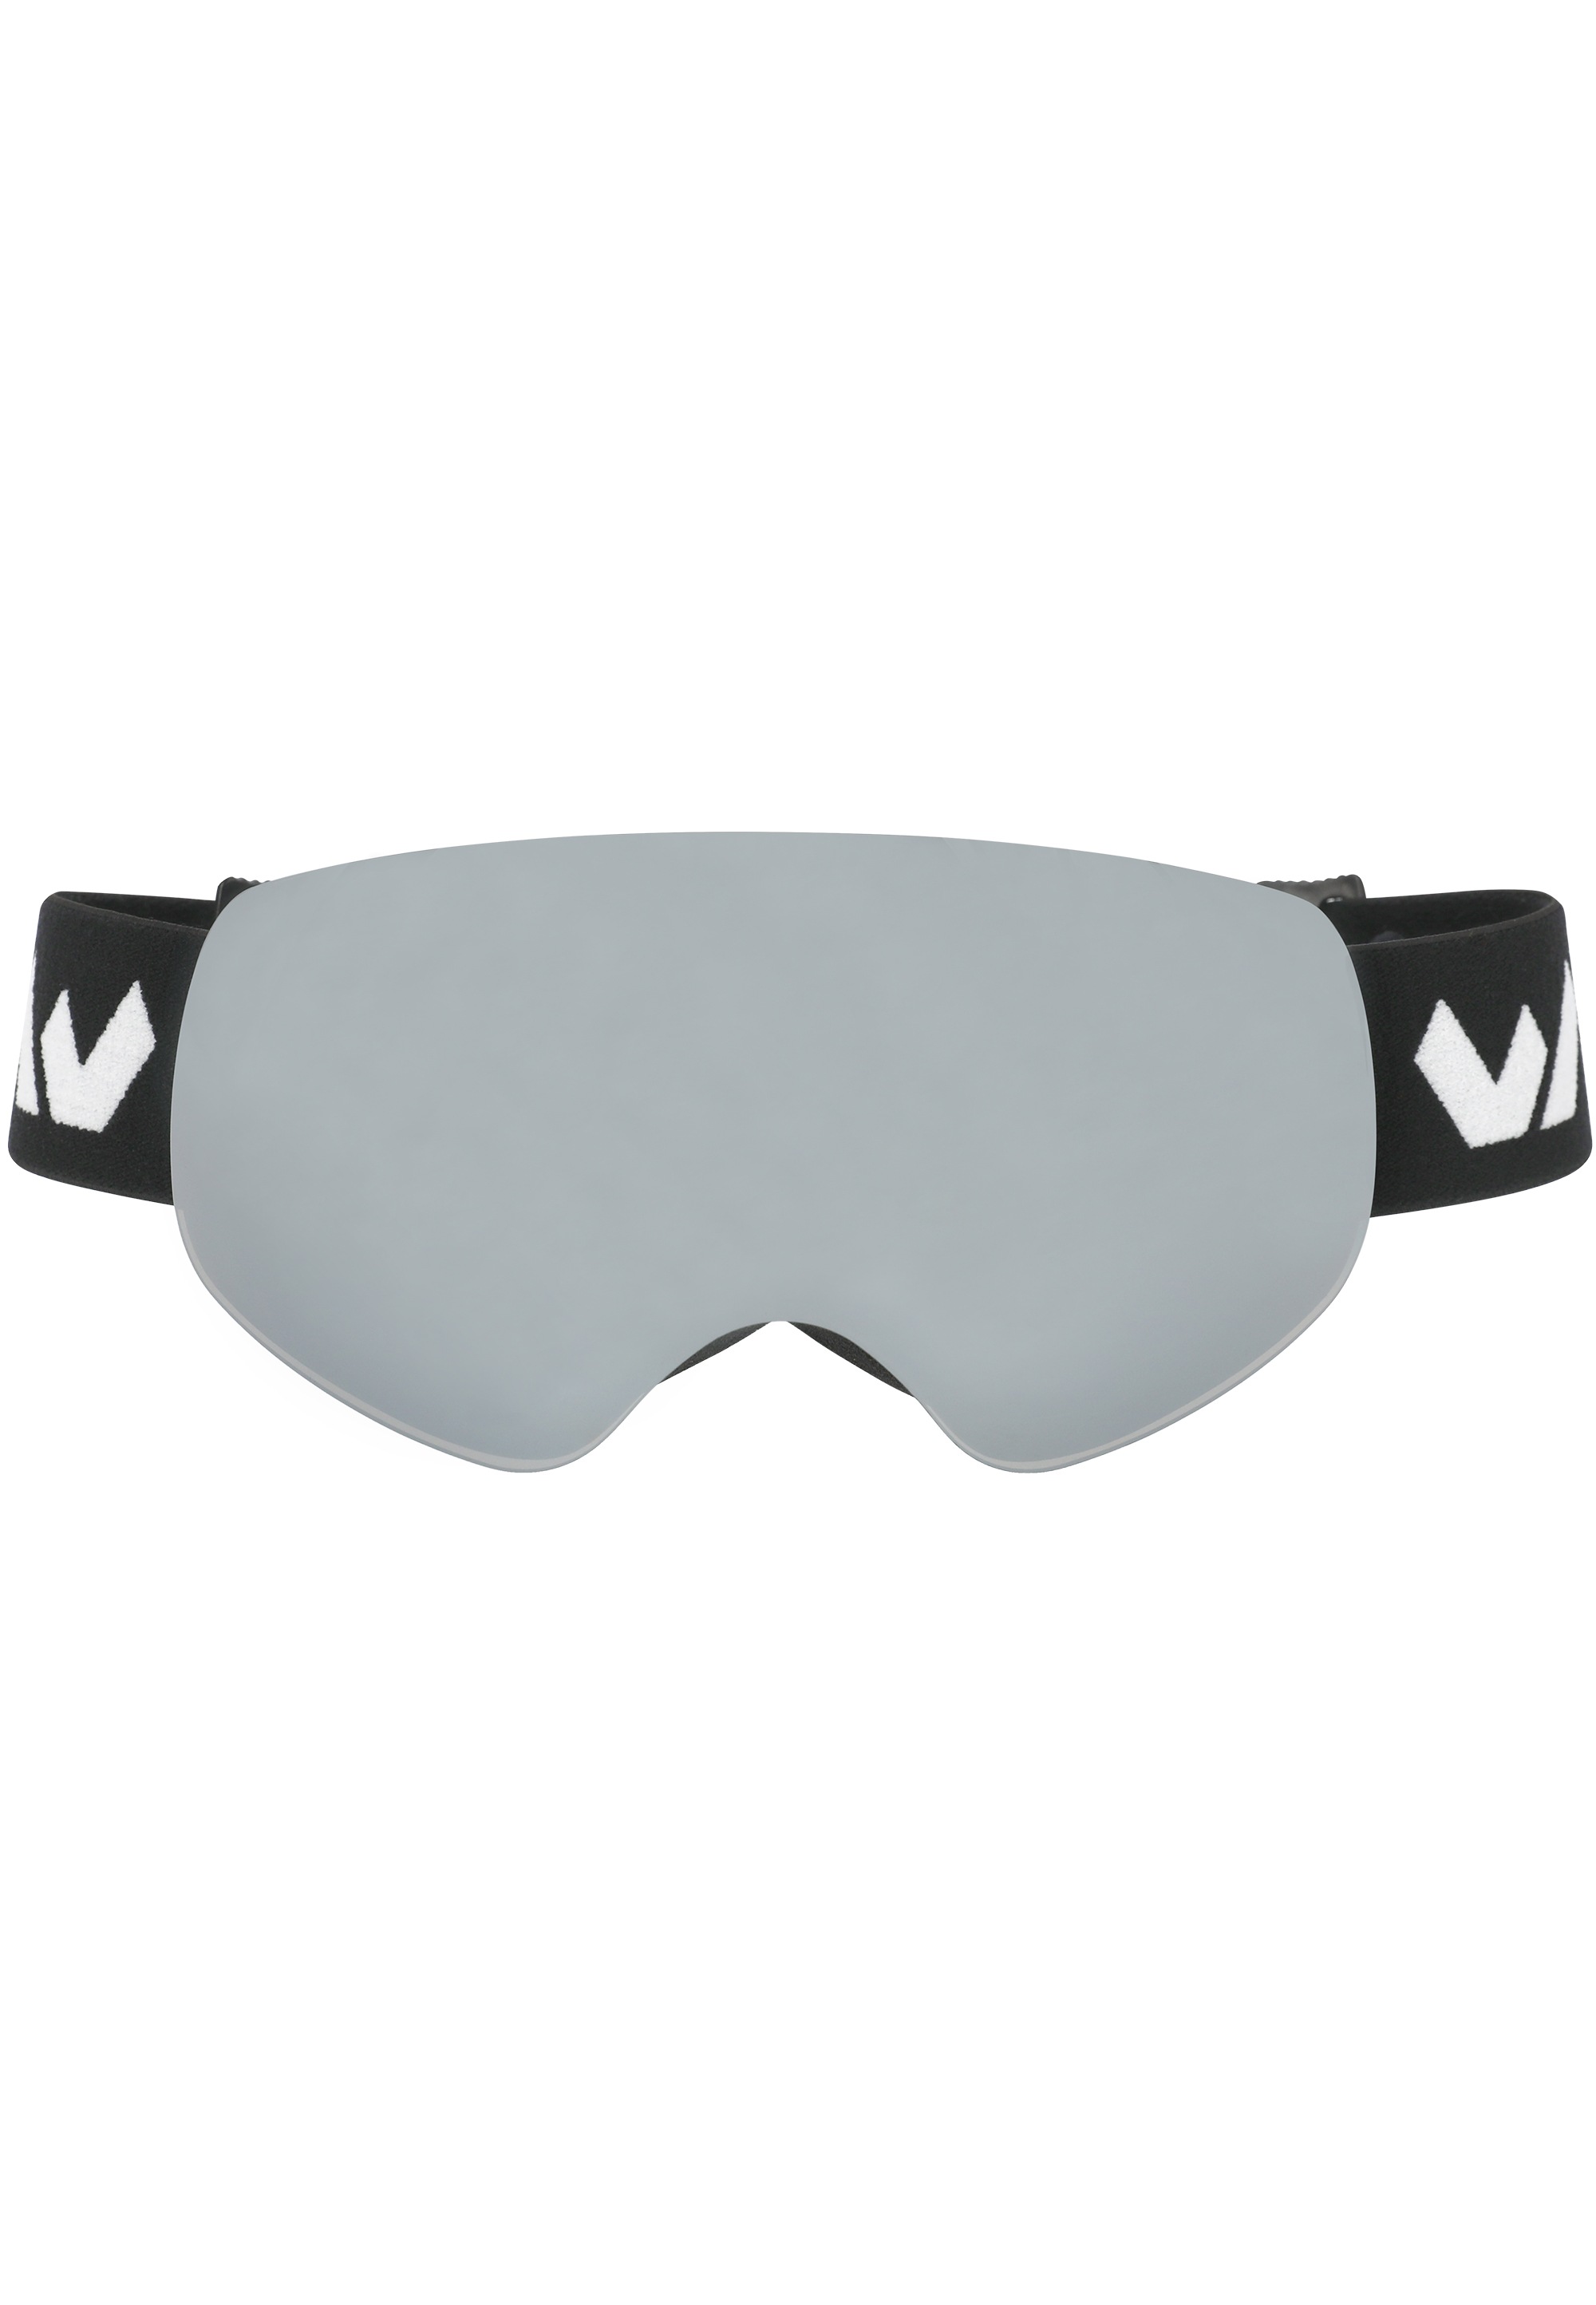 Skibrille »WS900 Jr.«, im rahmenlosen Design